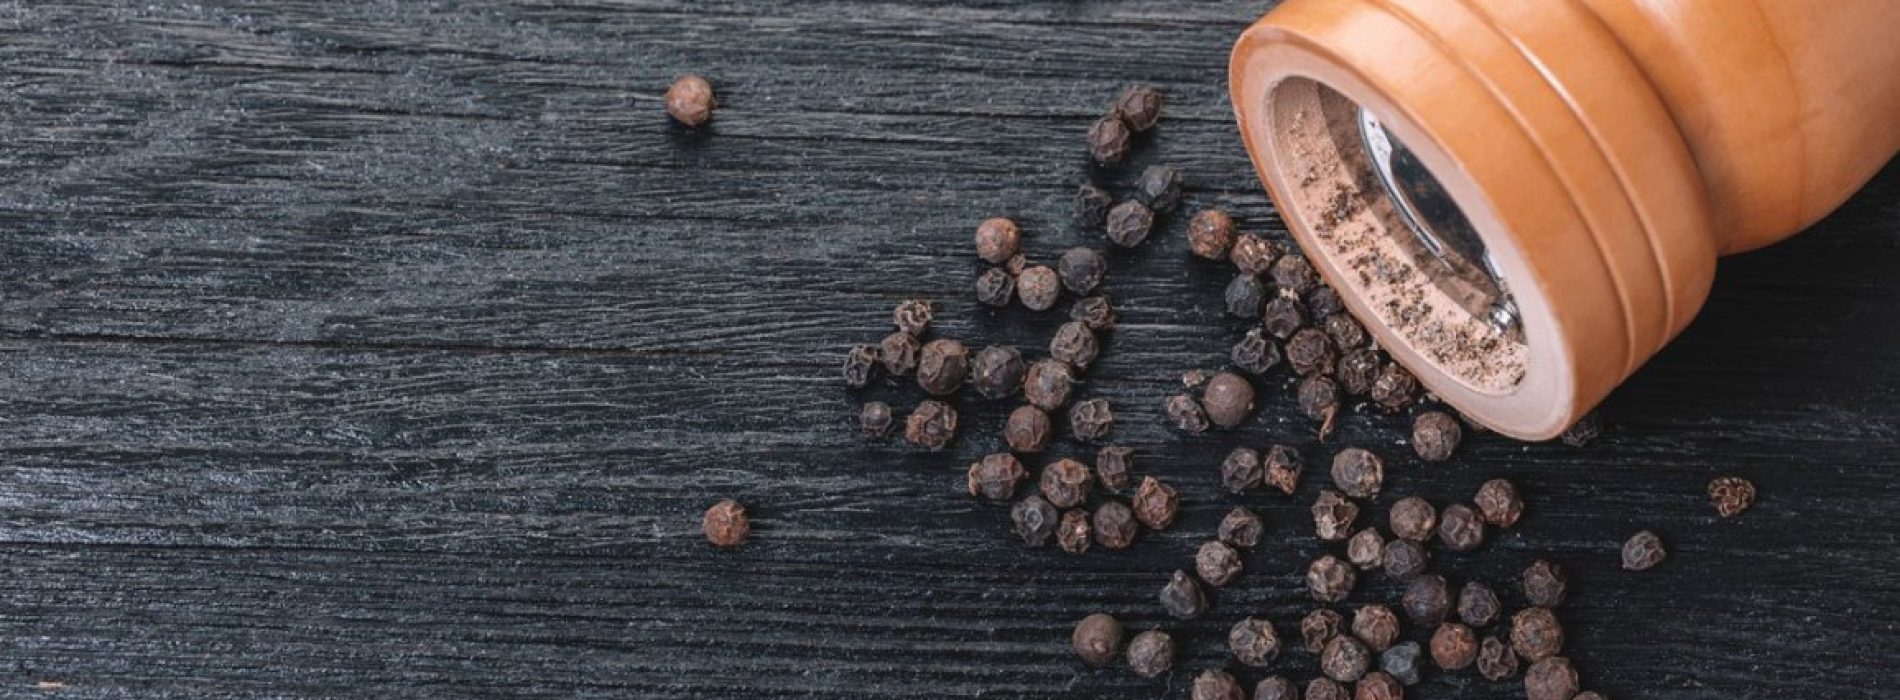 Zwarte peper is de “koning” van specerijen, dankzij deze 11 gezondheidsvoordelen